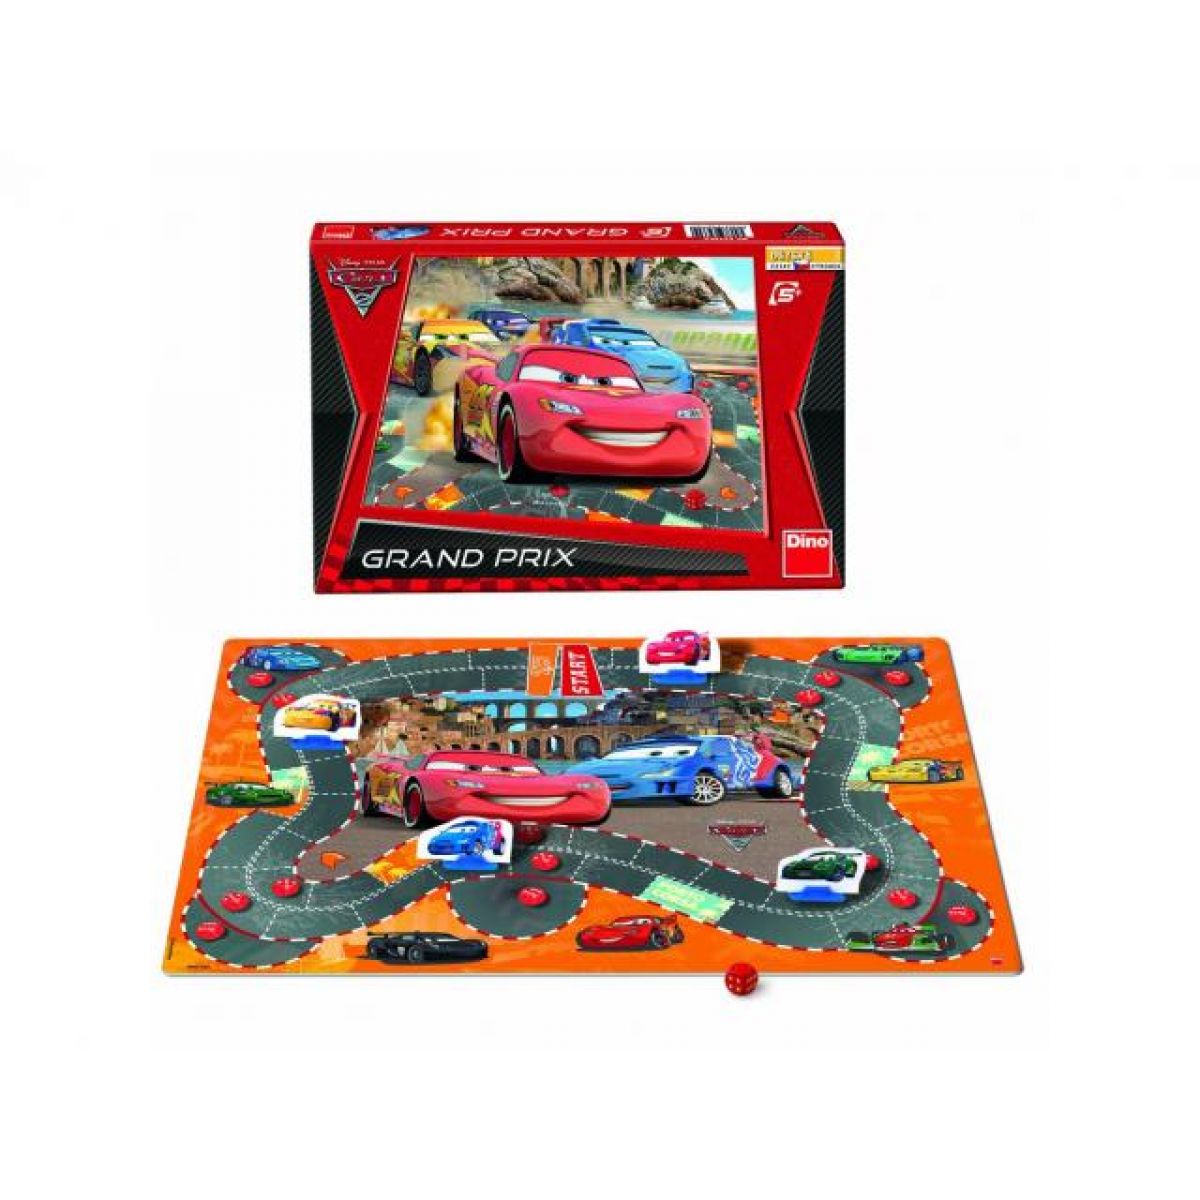 Dino 623309 - Společenská hra Cars 2 Grand Prix